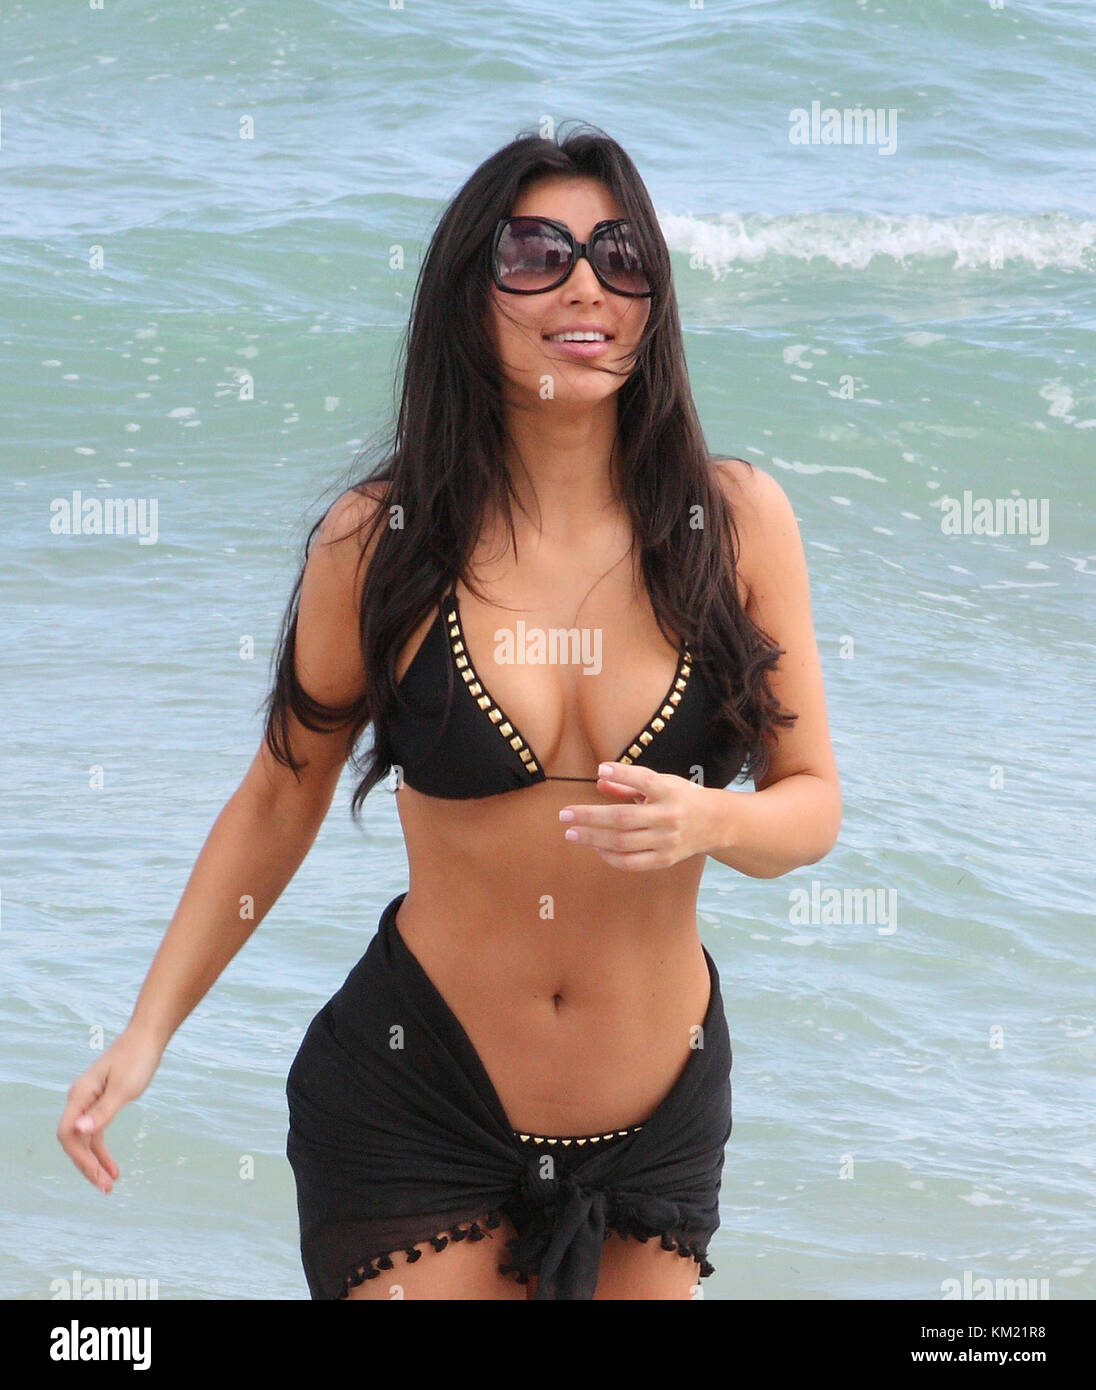 Smg FL1 Kim Kardashian black bikini 111408 04 Miami Beach, FL - 14 de  noviembre: la actriz Kim Kardashian, hermana kourtney kardashian y amigo de  la actriz kristin cavallari dieron para nadar